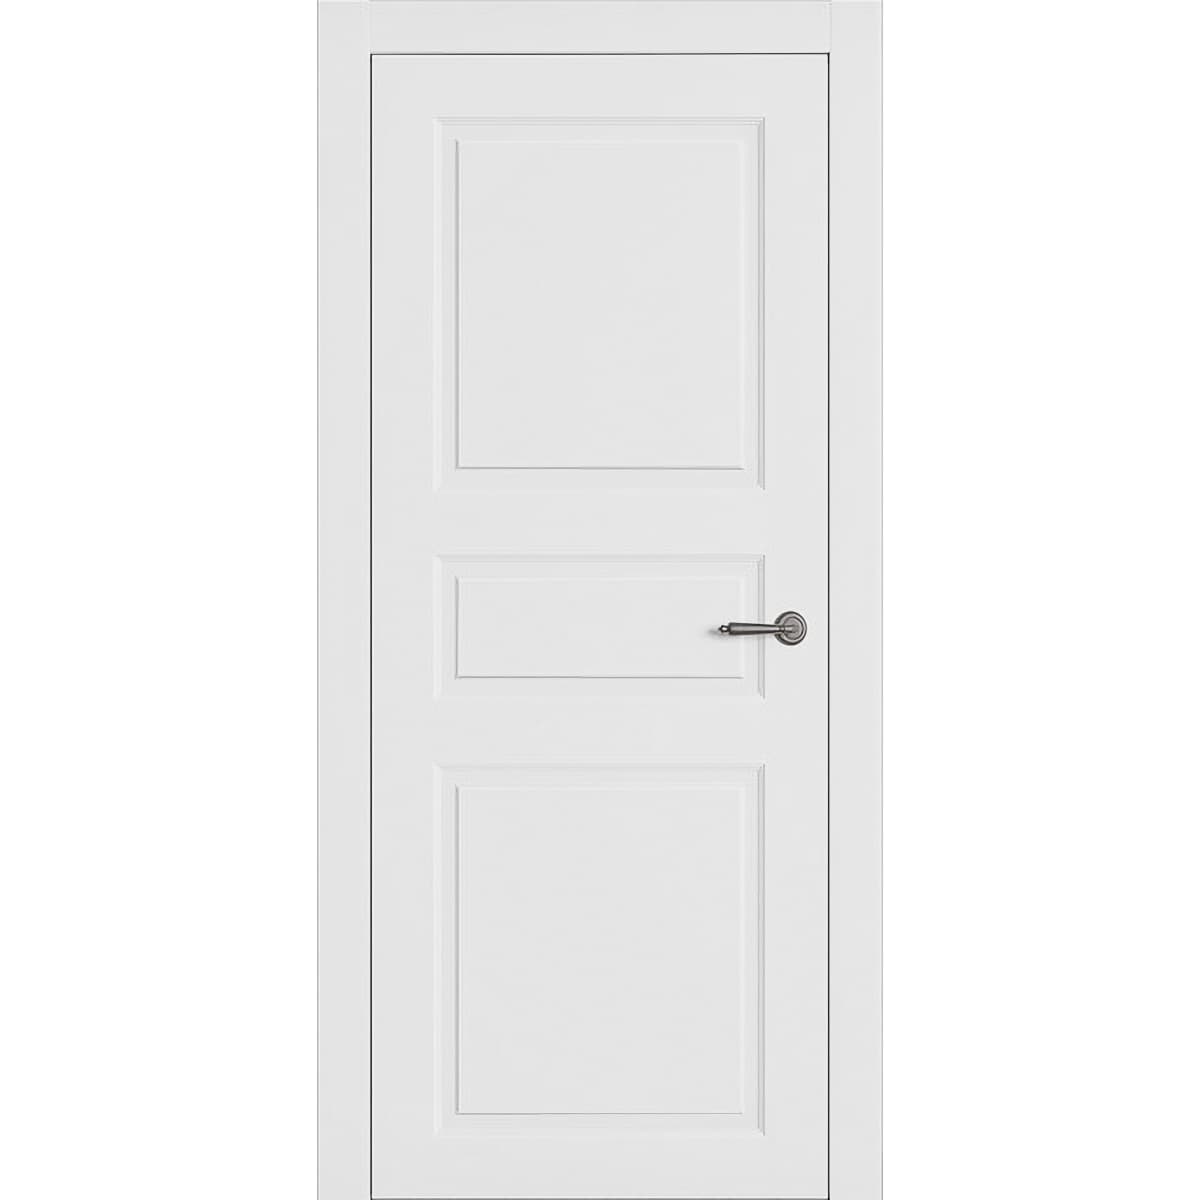 Двері міжкімнатні деревяні білі Amore Classic Ніцца ПГ